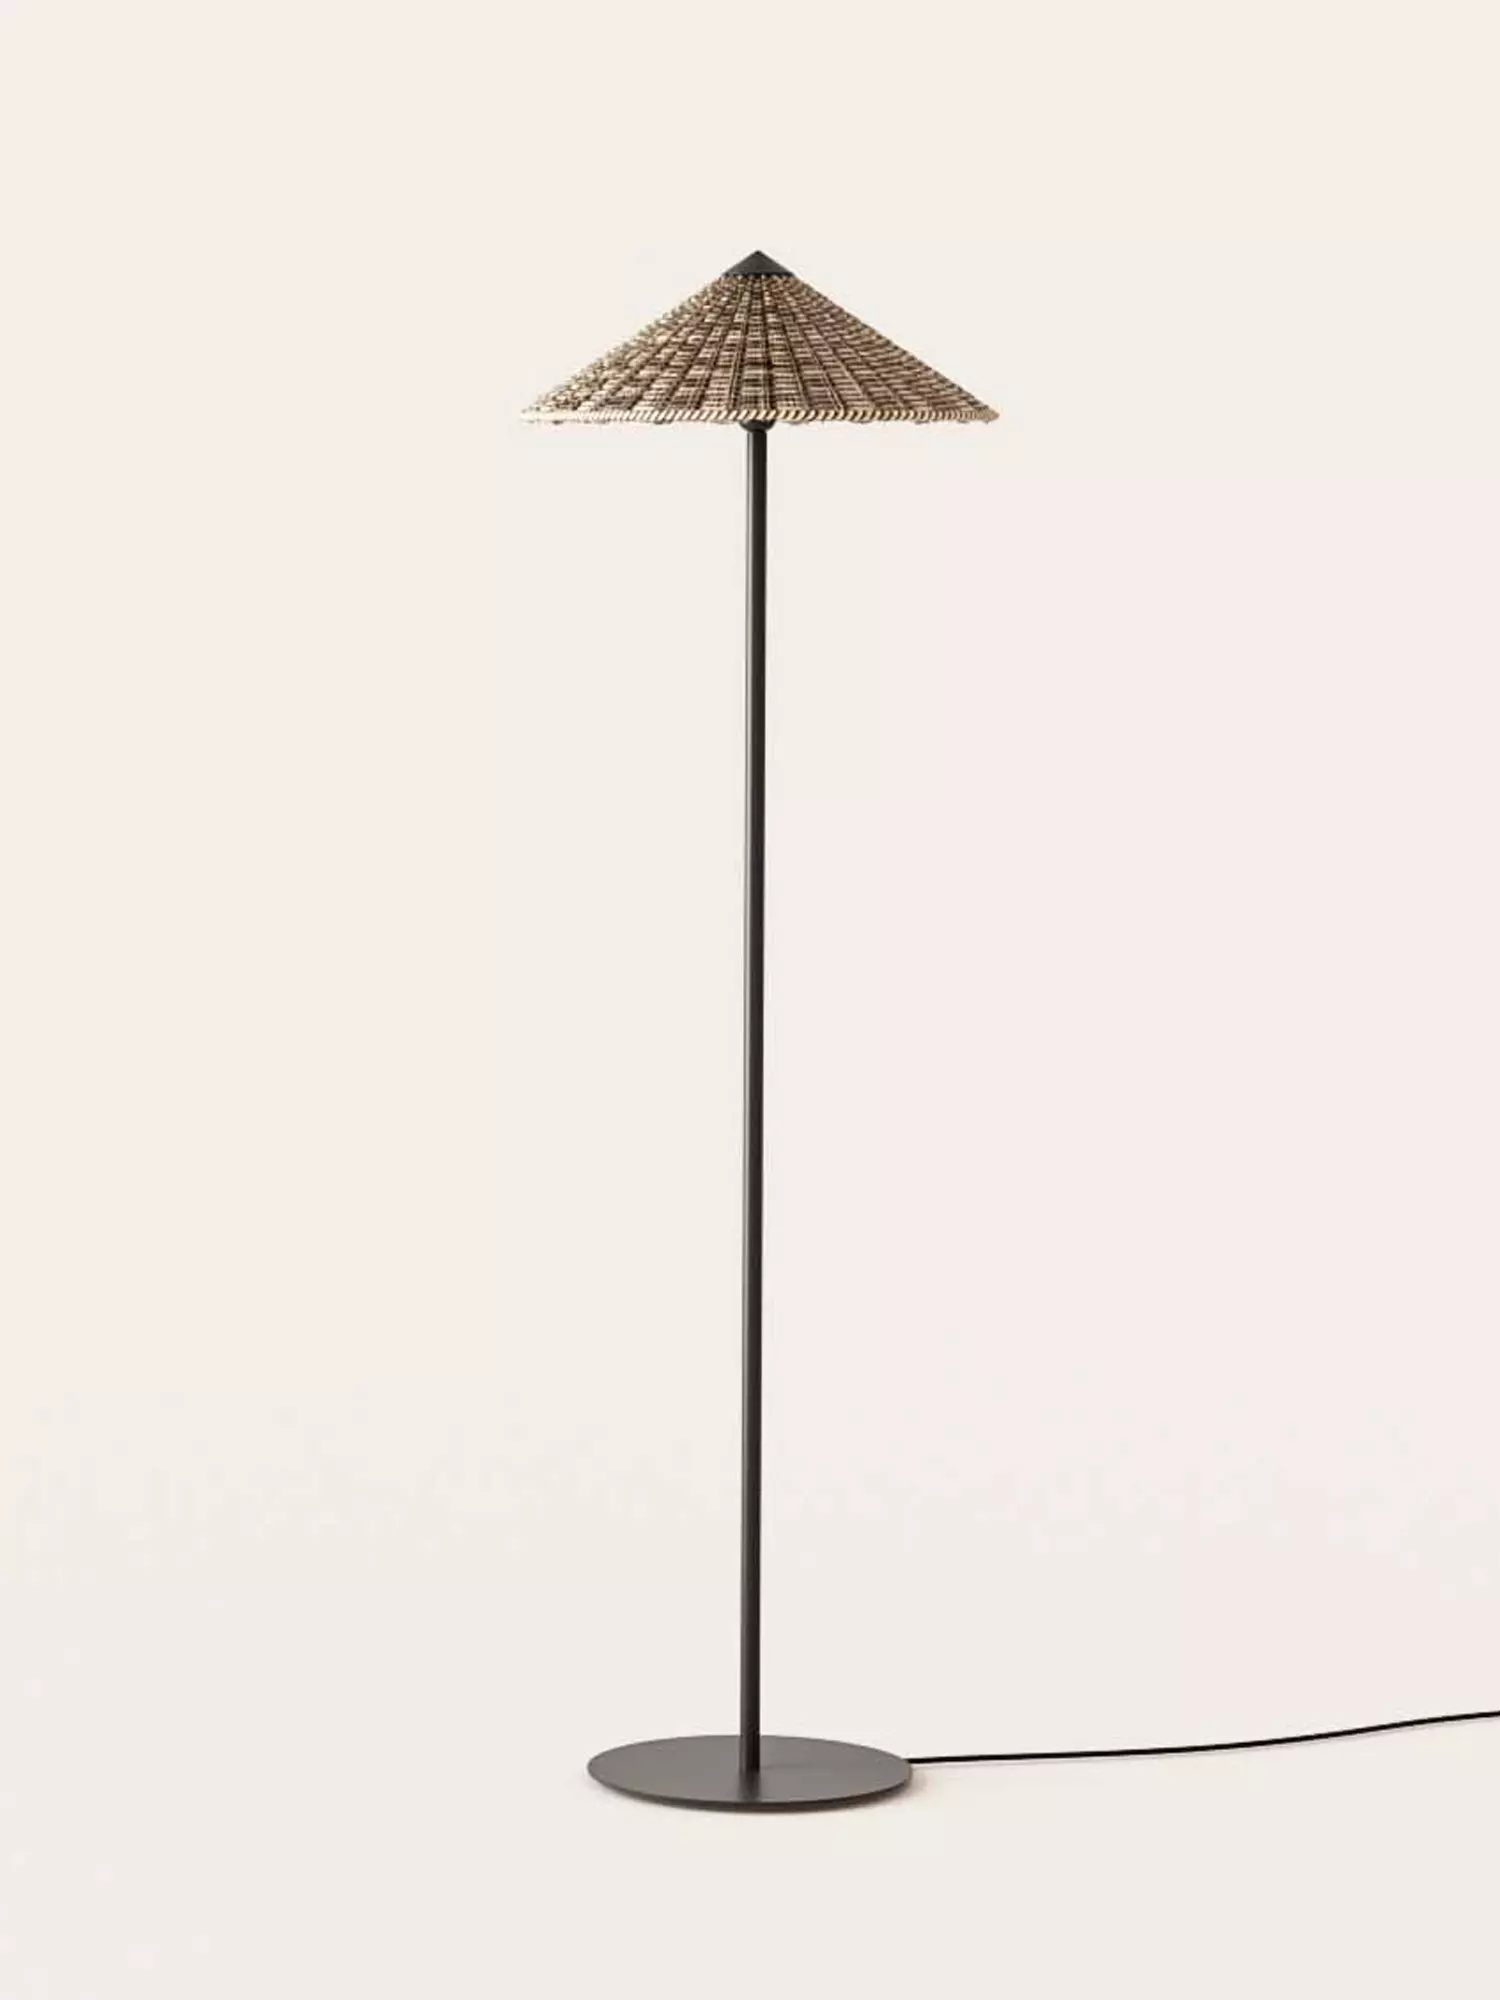 | showroom Lamps Warsaw of LIGHTING Furniture store best | brands Floor 9design,